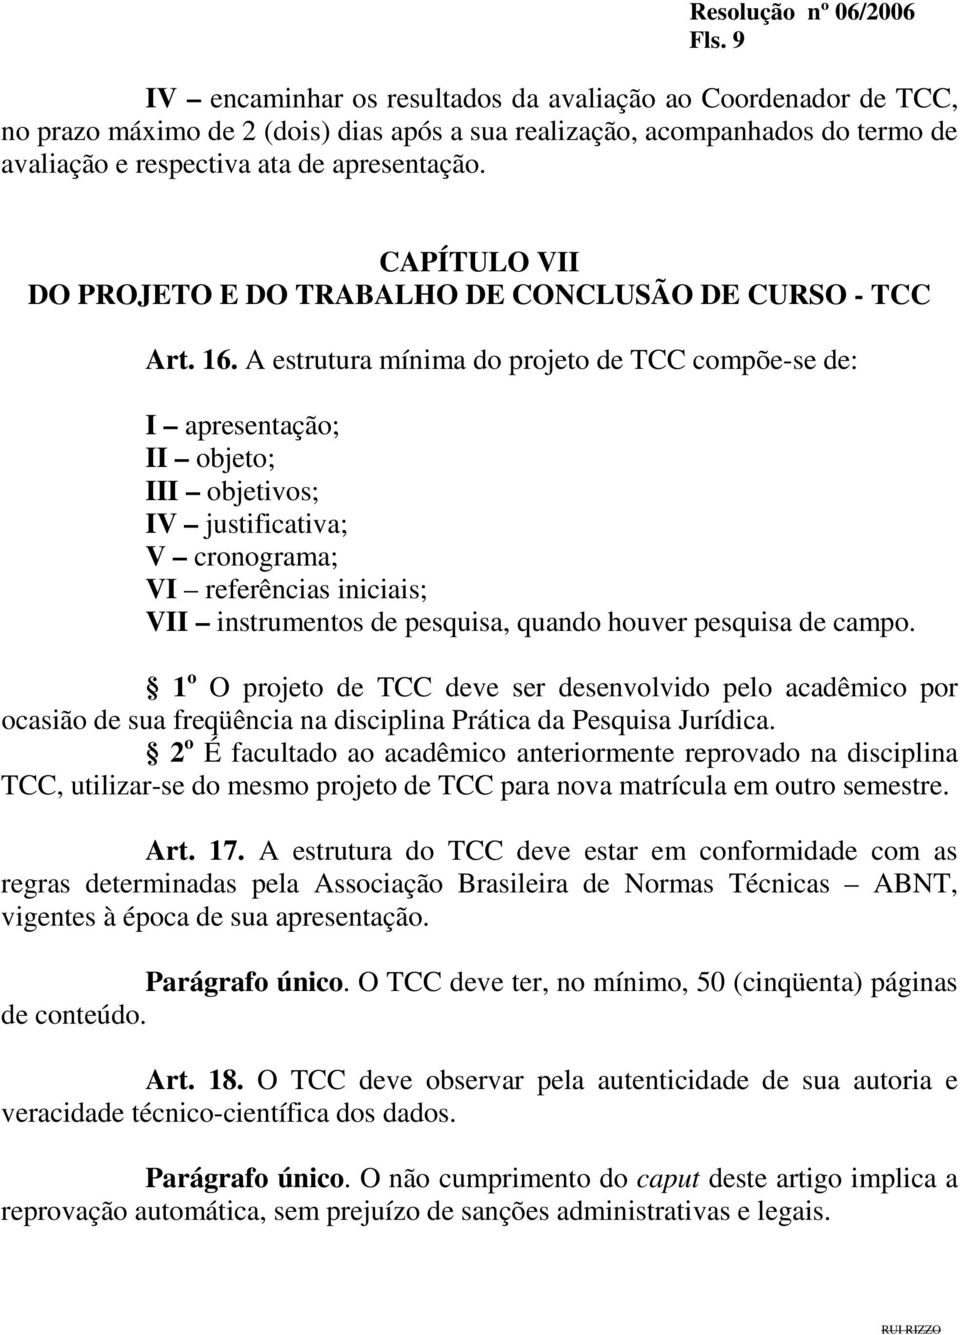 A estrutura mínima do projeto de TCC compõe-se de: I apresentação; II objeto; III objetivos; IV justificativa; V cronograma; VI referências iniciais; VII instrumentos de pesquisa, quando houver